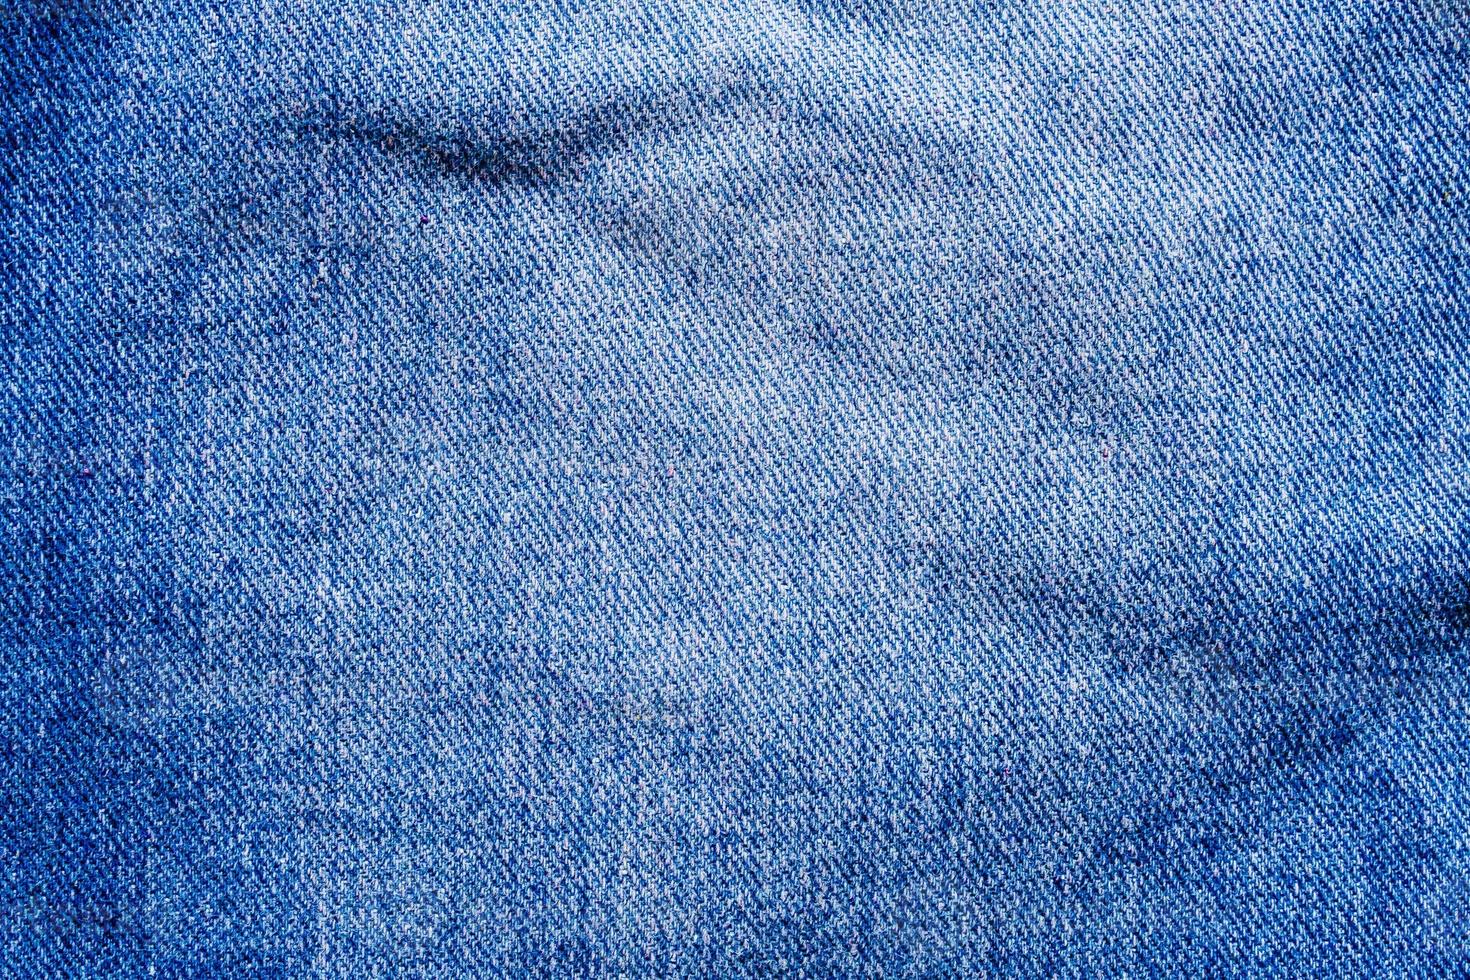 Denim Blue Jeans Textur Nahaufnahme Hintergrund Draufsicht foto